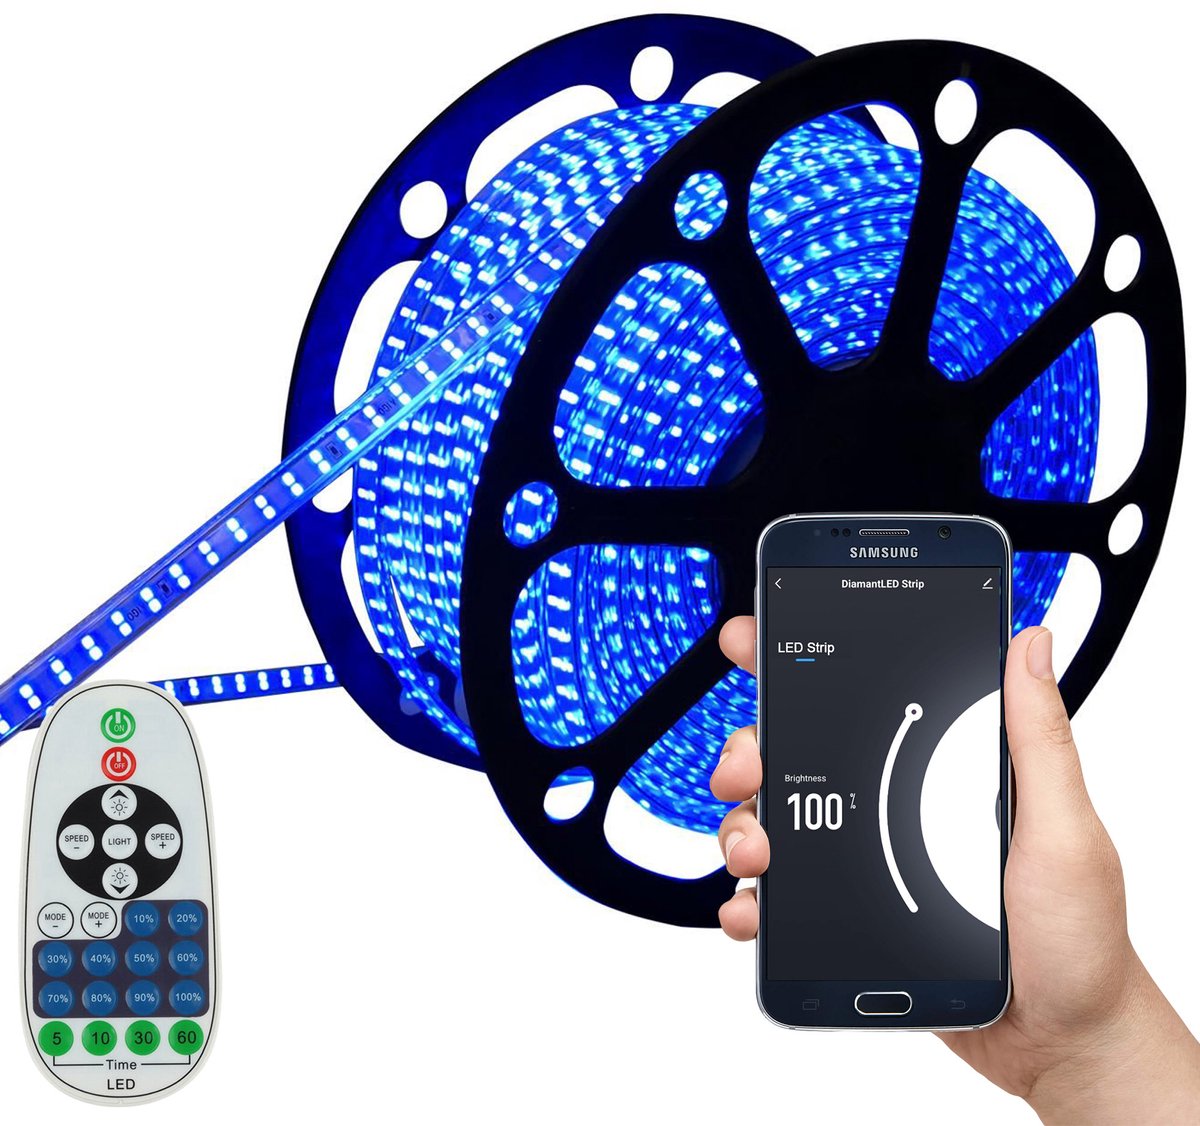 LED Strip Blauw - 10 Meter aan één stuk - 180 LED's per meter - Met Wi-Fi App + IR 23 knops afstandsbediening - Smarthome - Google Home/Amazon Alexa - Waterdicht - Makkelijke mobiele App voor bedienen inclusief afstandsbediening - iOS en Android